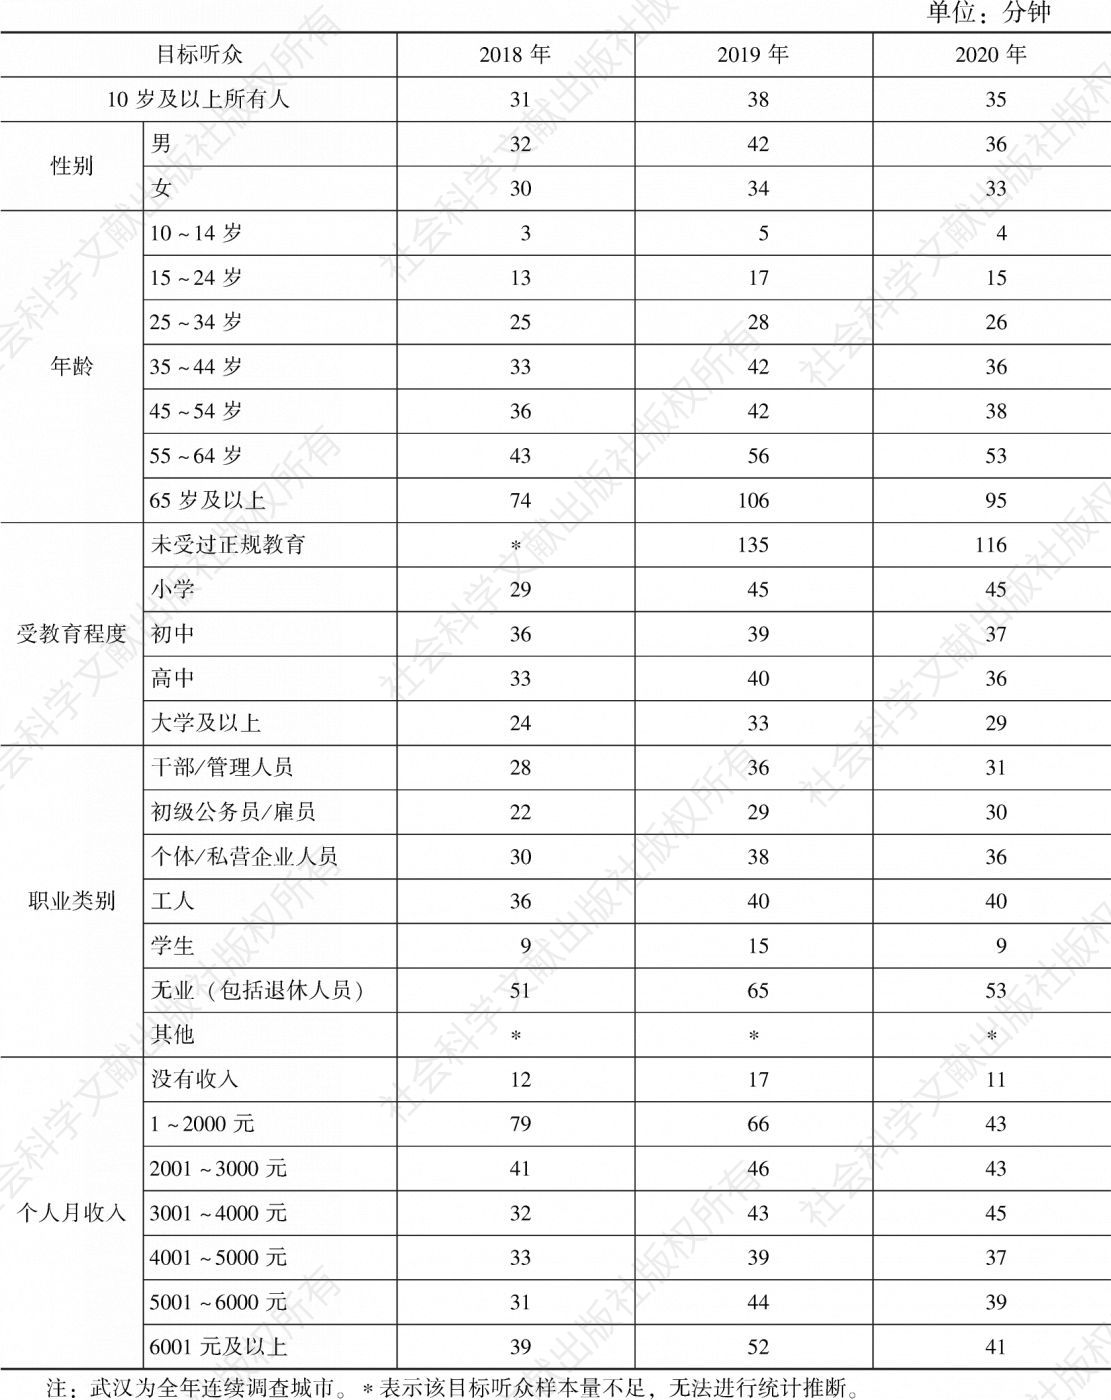 表4.23.1 2018～2020年武汉各目标听众人均收听时间